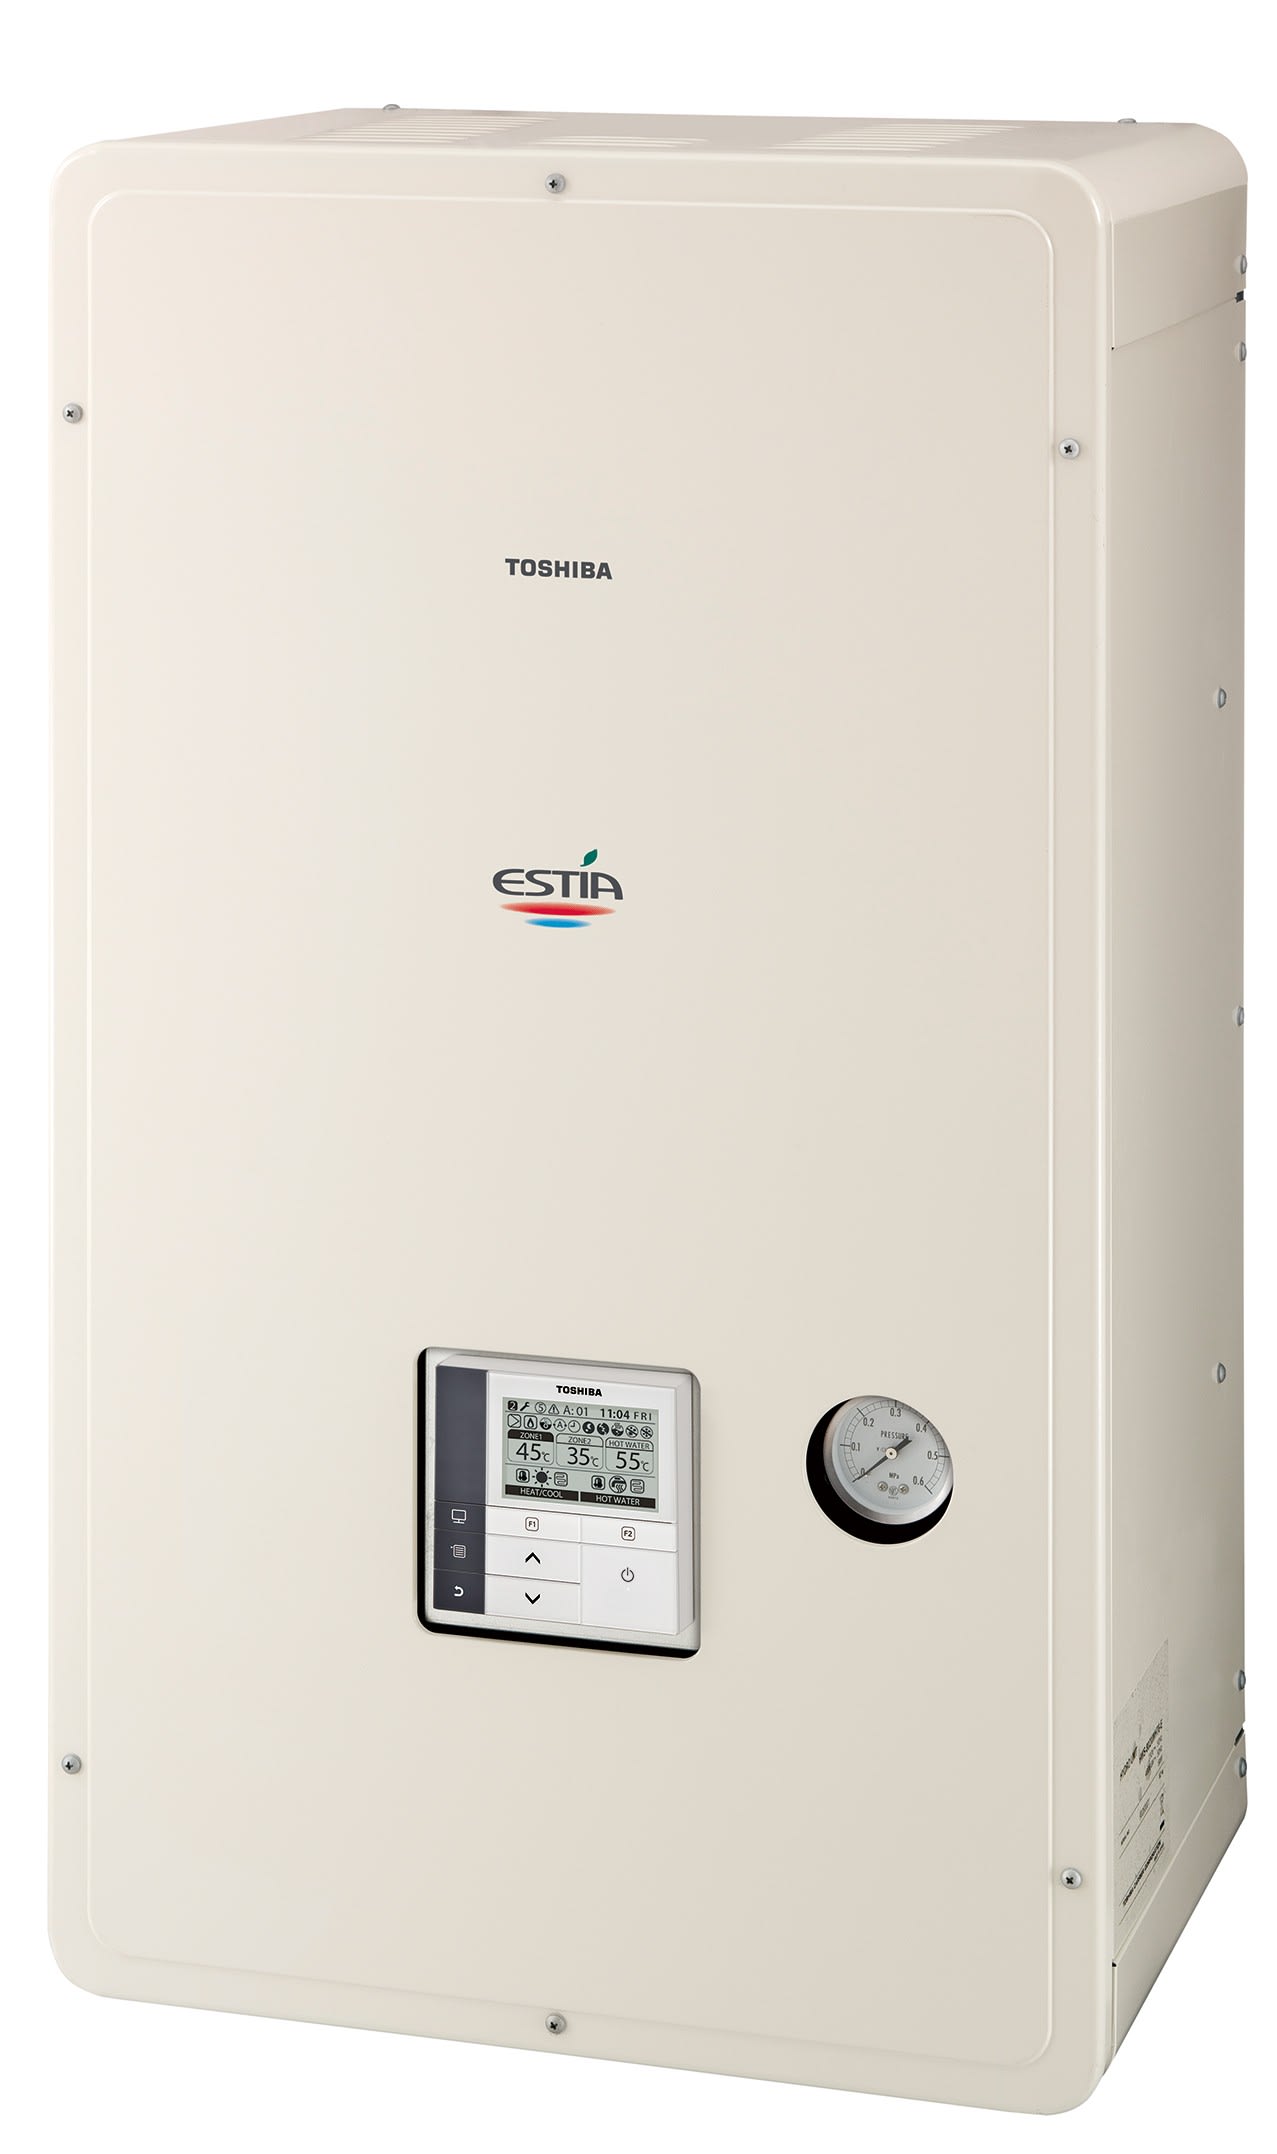 Toshiba Climatisation - Module Hydraulique résistance électrique 9kW